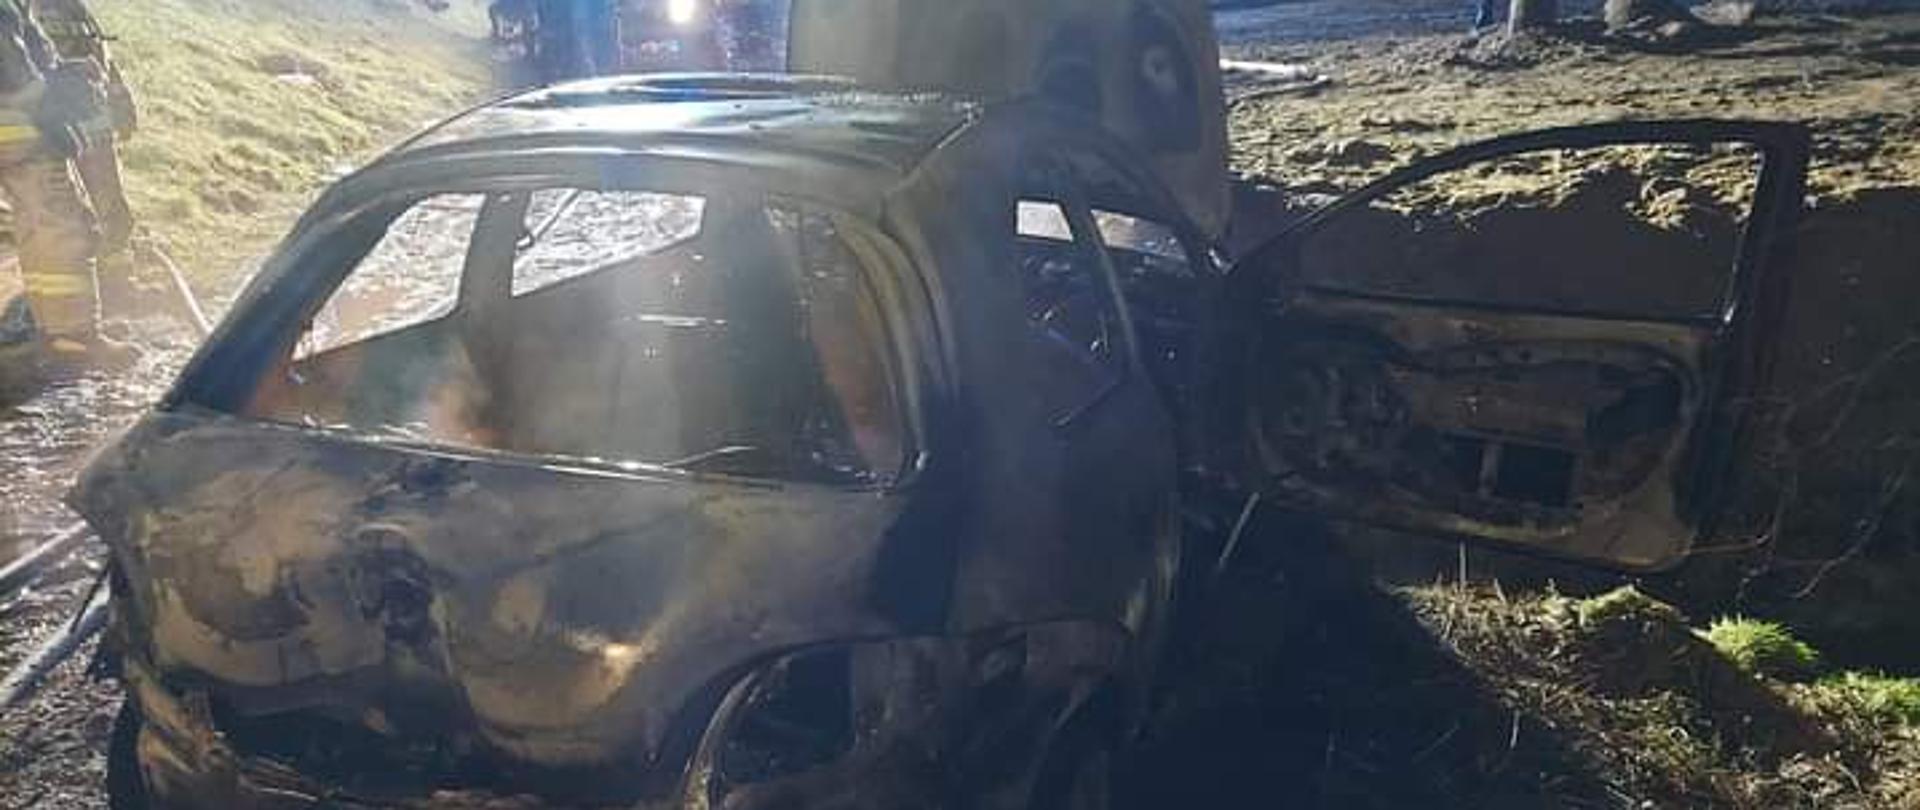 Zdjęcie przedstawia całkowicie spalony samochód osobowy, który zaparkowany jest na drodze gminnej. Samochód ma otwartą maskę oraz drzwi pasażera. Pora nocna. Na zdjęciu widać strażaków oraz samochód strażacki. 